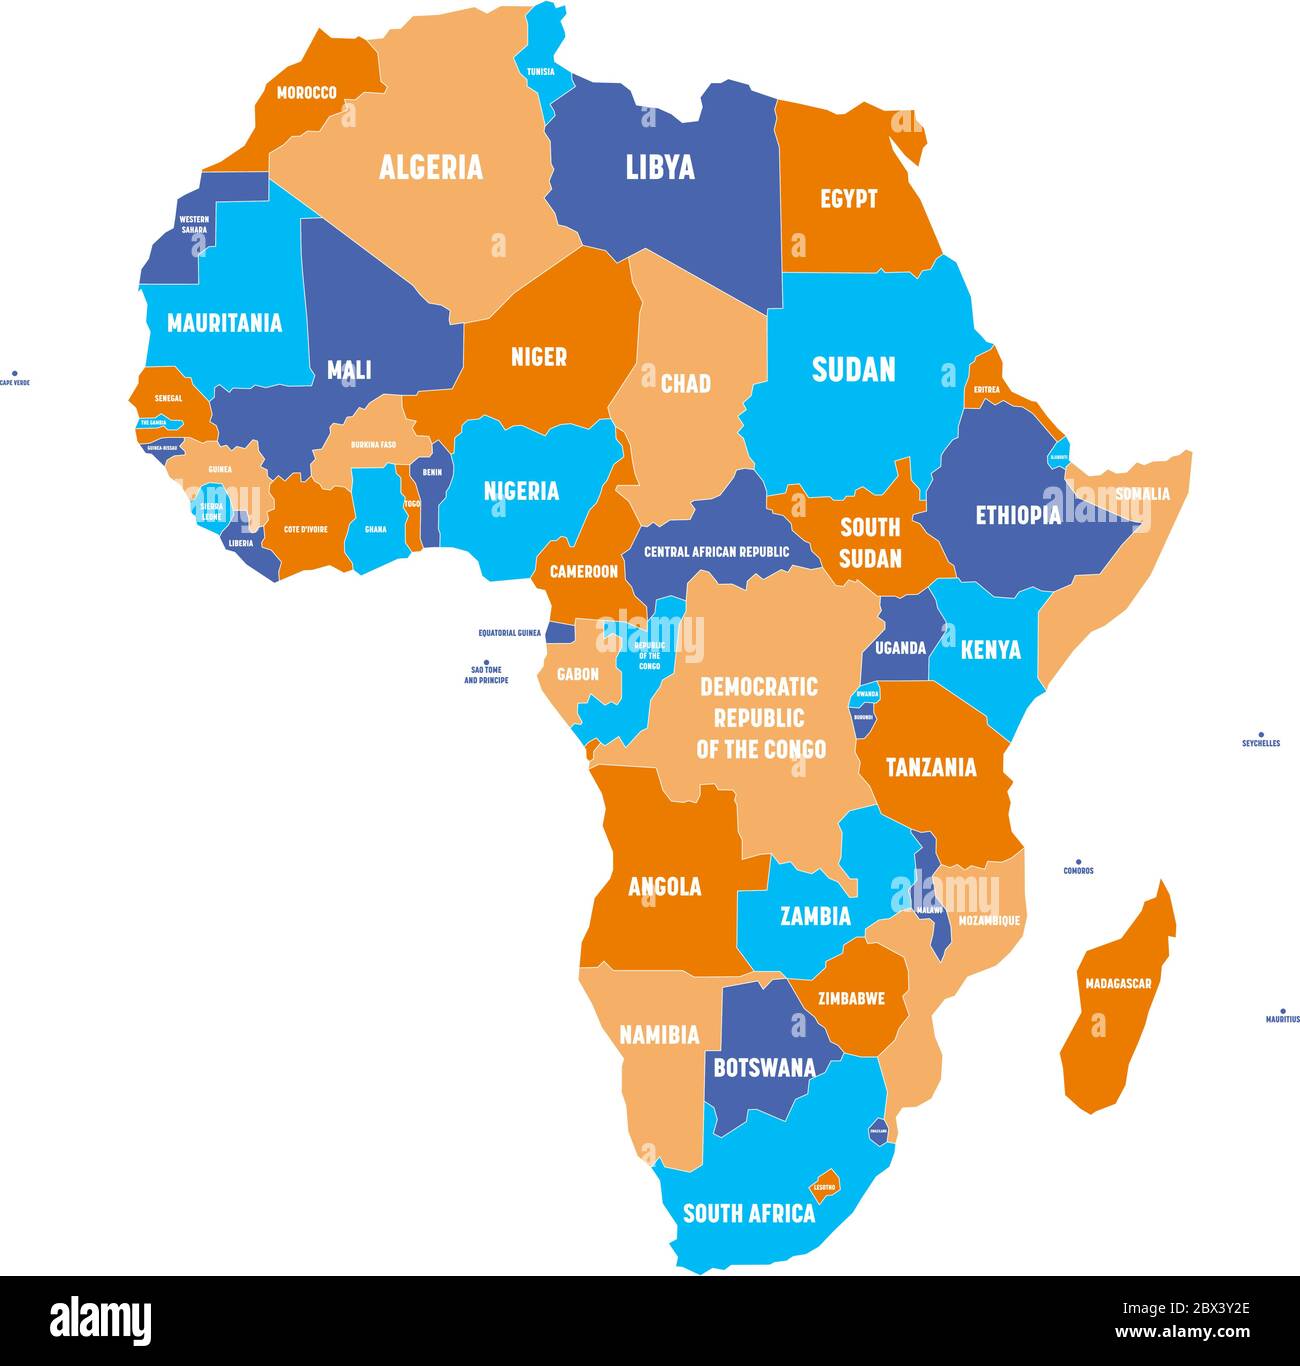 Bunte politische Karte des afrikanischen Kontinents mit nationalen Grenzen und Ländernamen-Etiketten auf weißem Hintergrund. Vektorgrafik. Stock Vektor